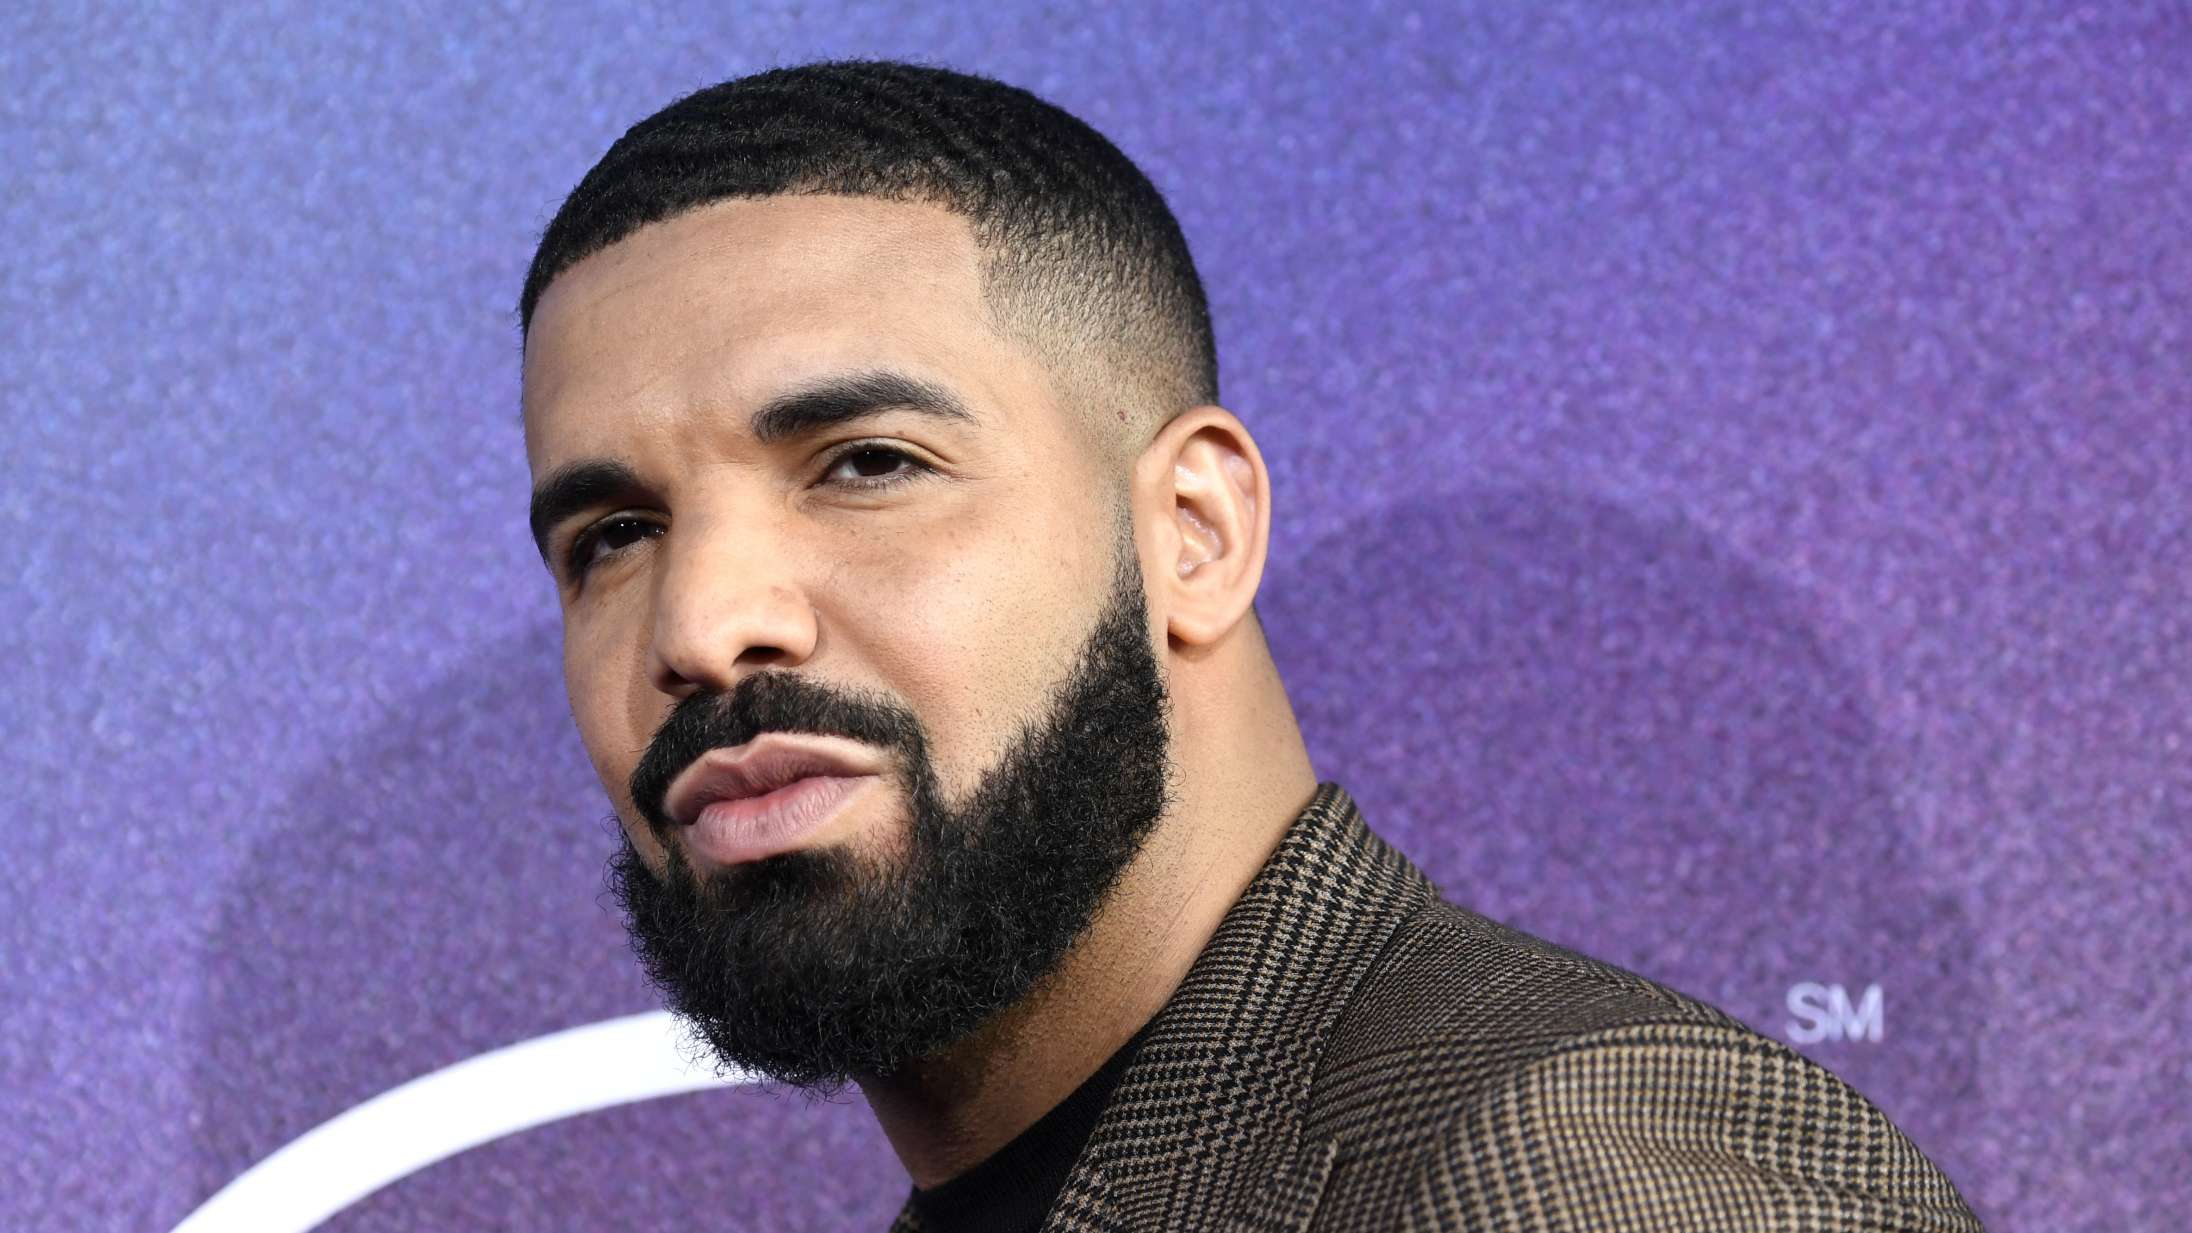 Drake har fået ny frisure – og det vælter ind med memes